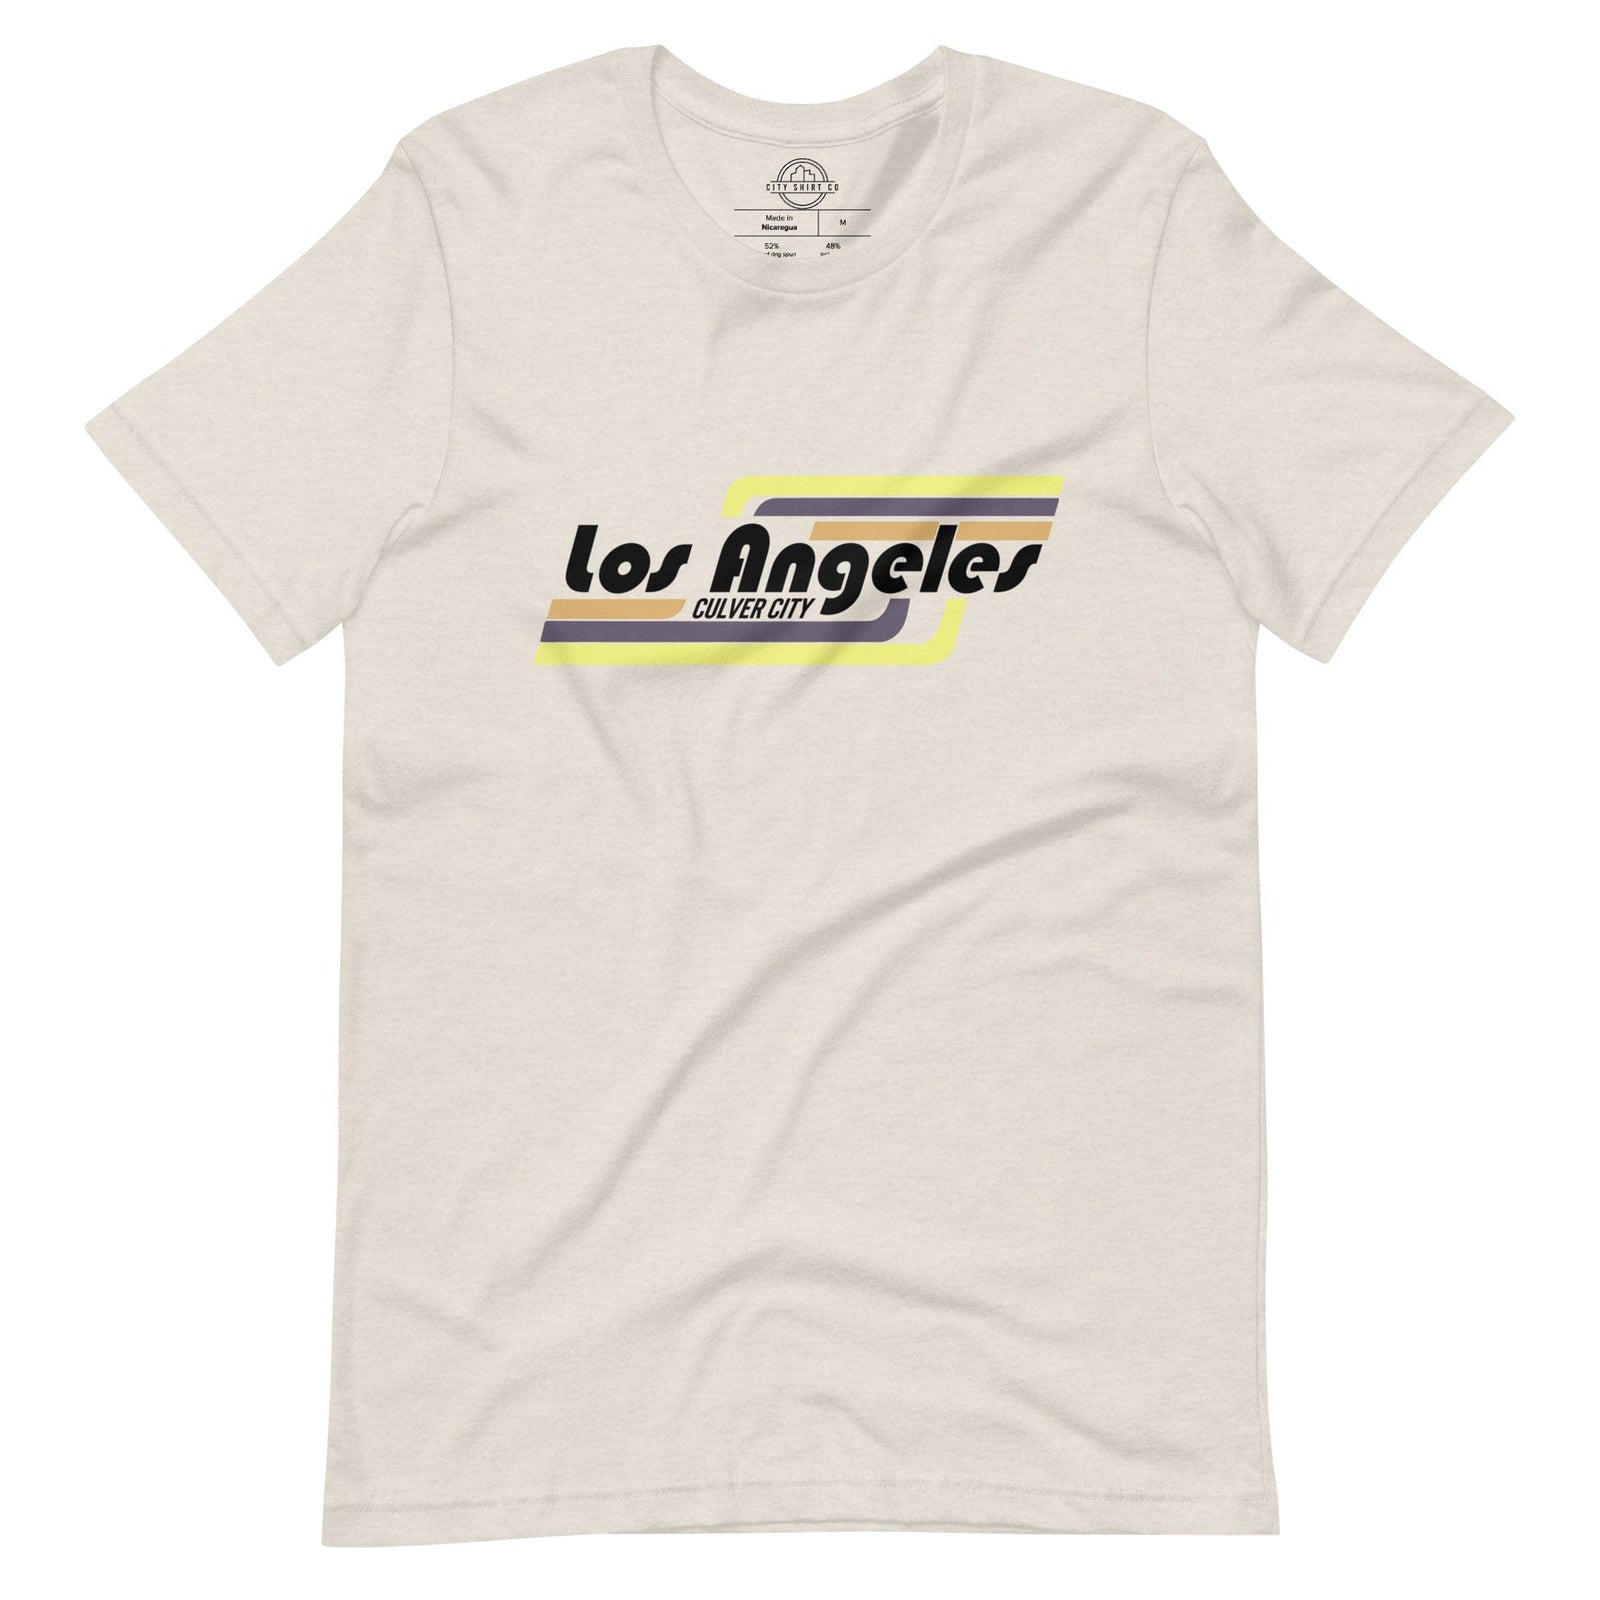 Los Angeles City Department T-Shirts – LA City Store